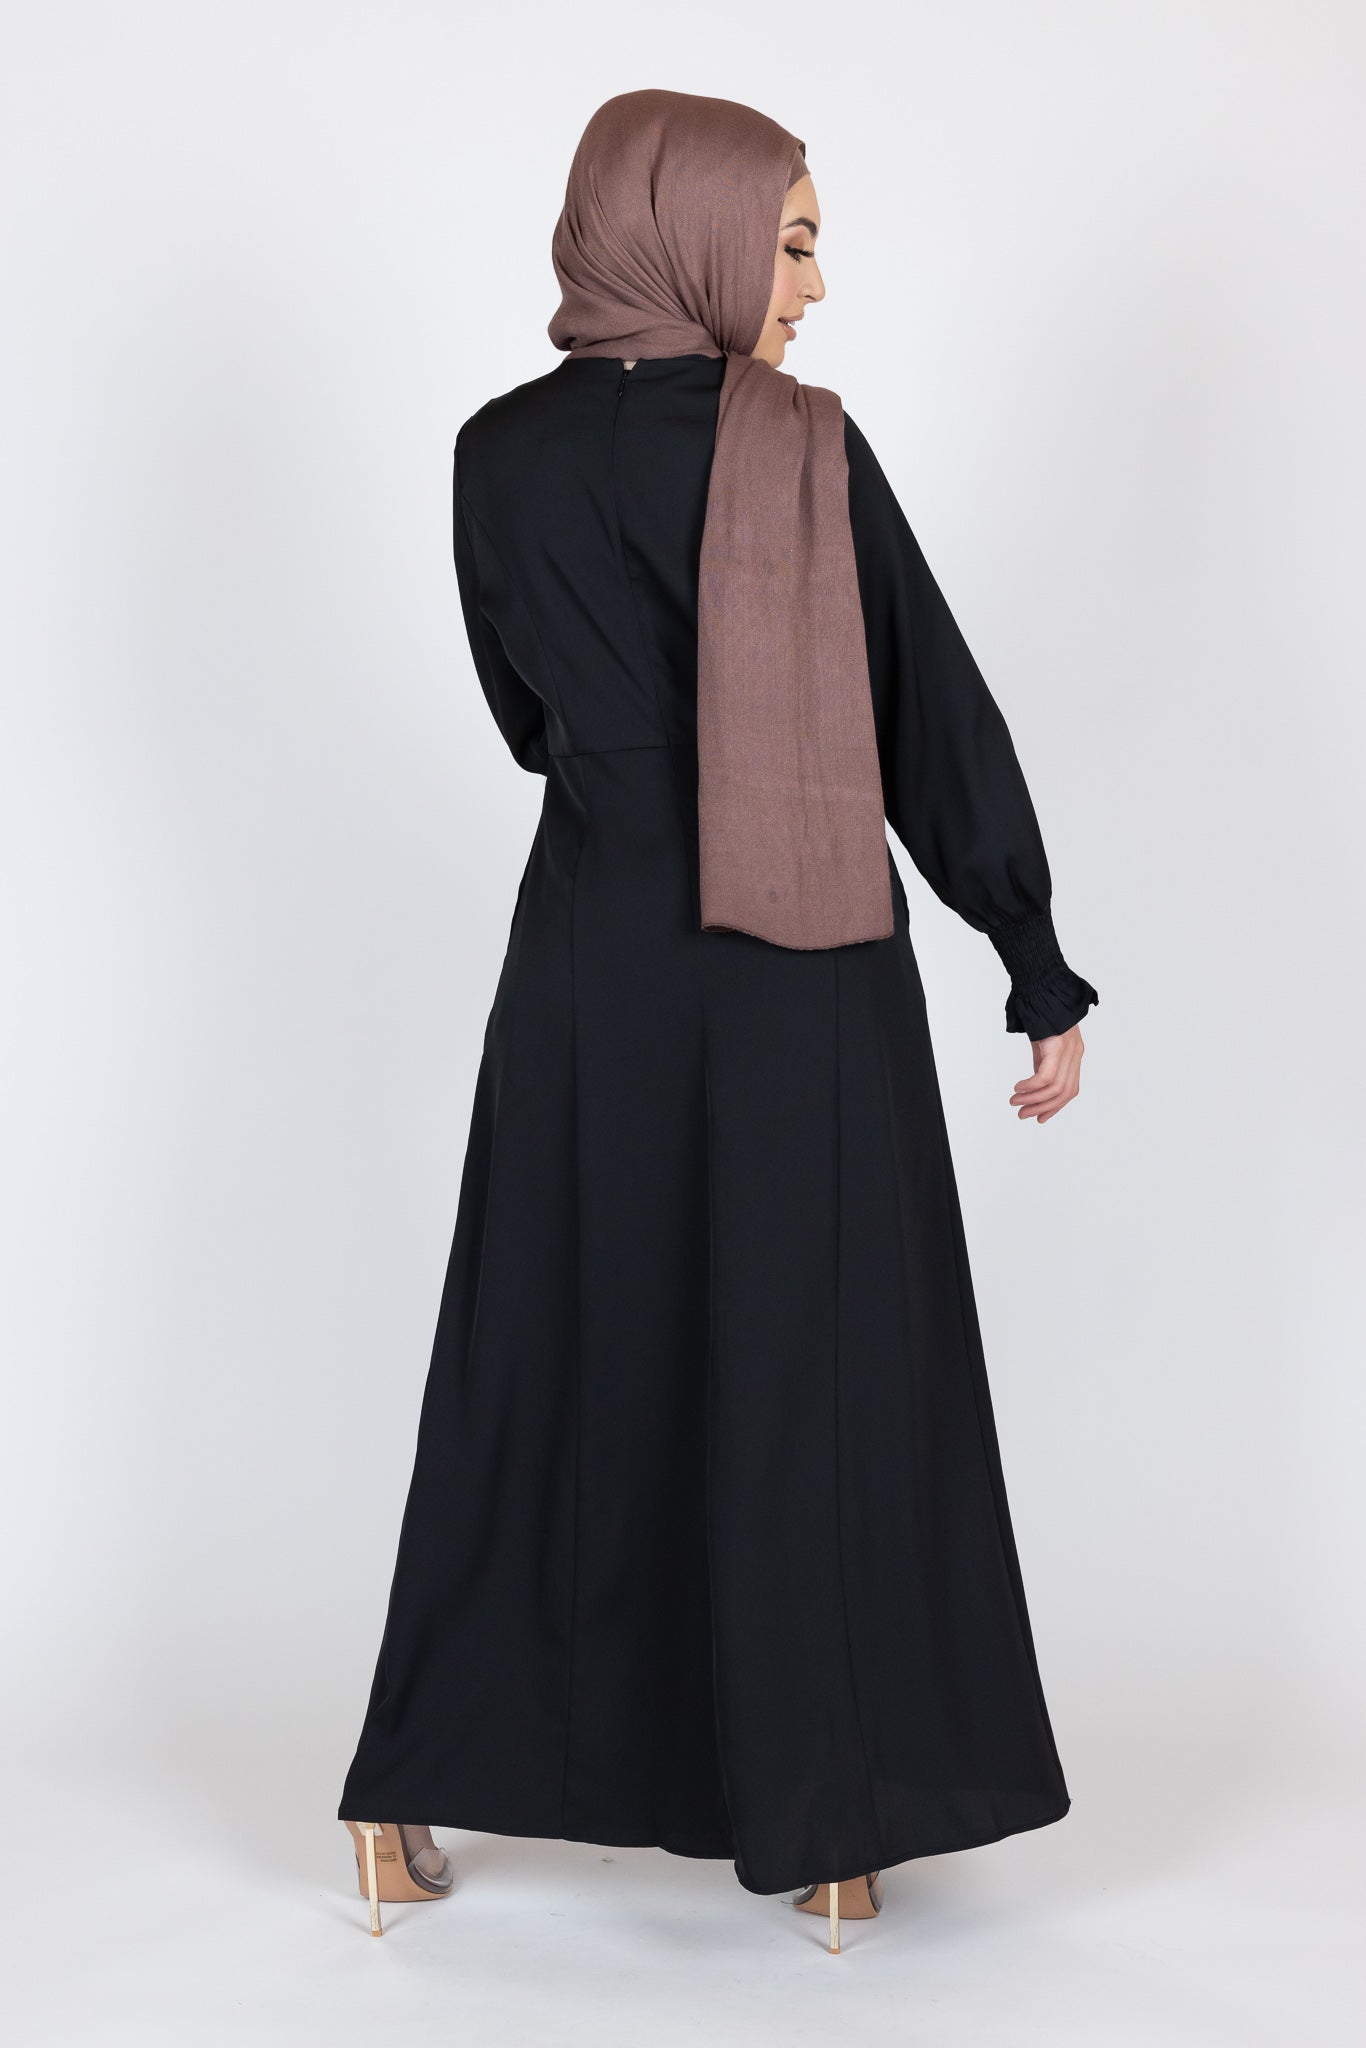 M8018Black-dress-abaya